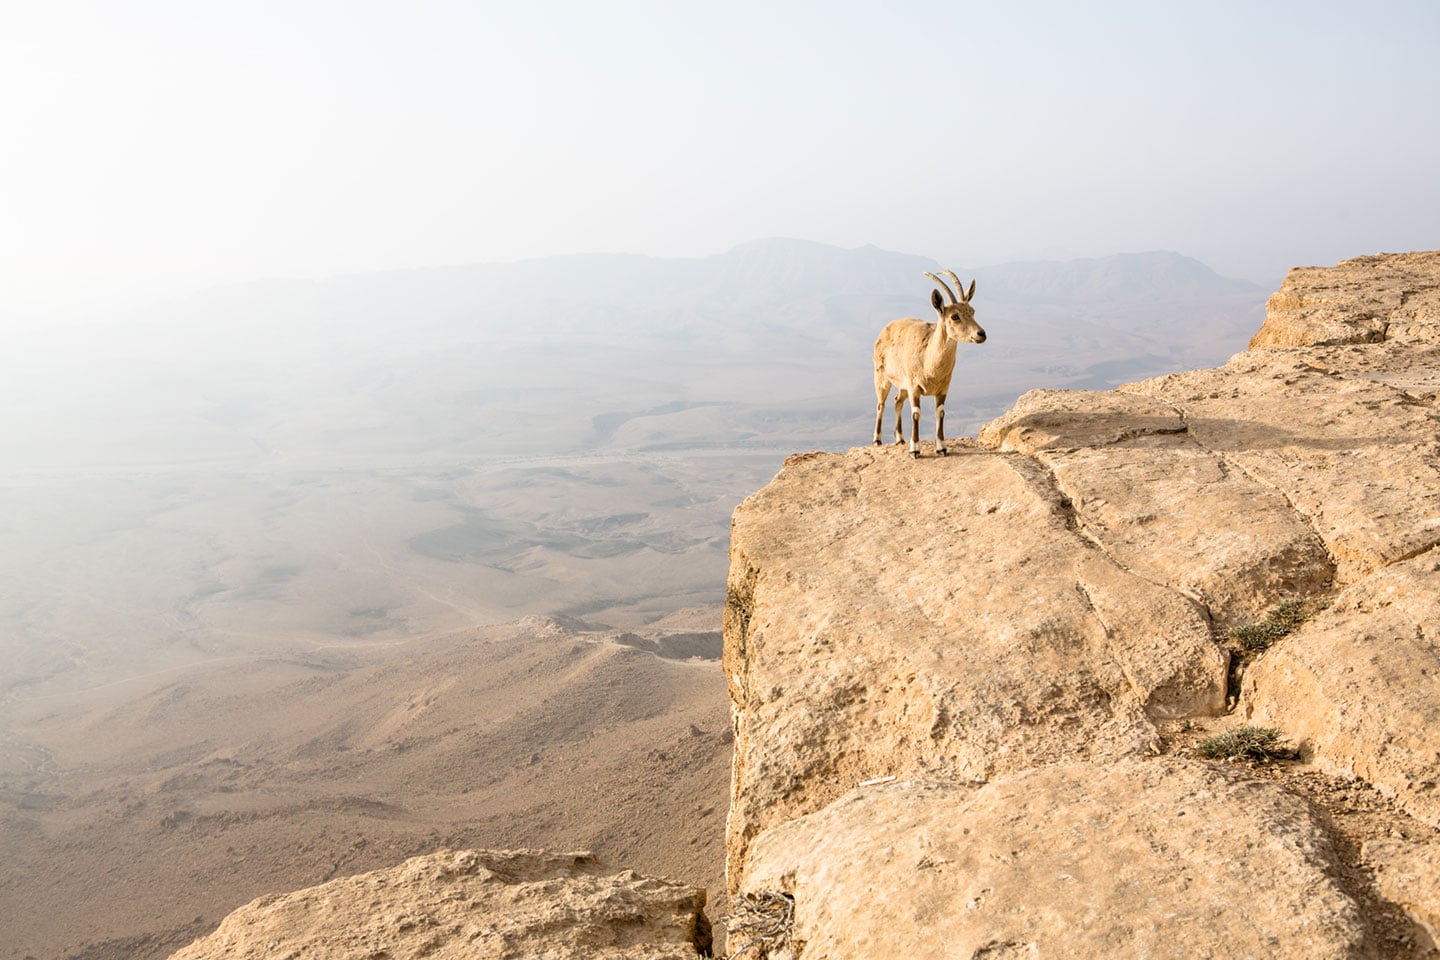 Nubian ibex on a cliff in Mitzpe Ramon, Israel